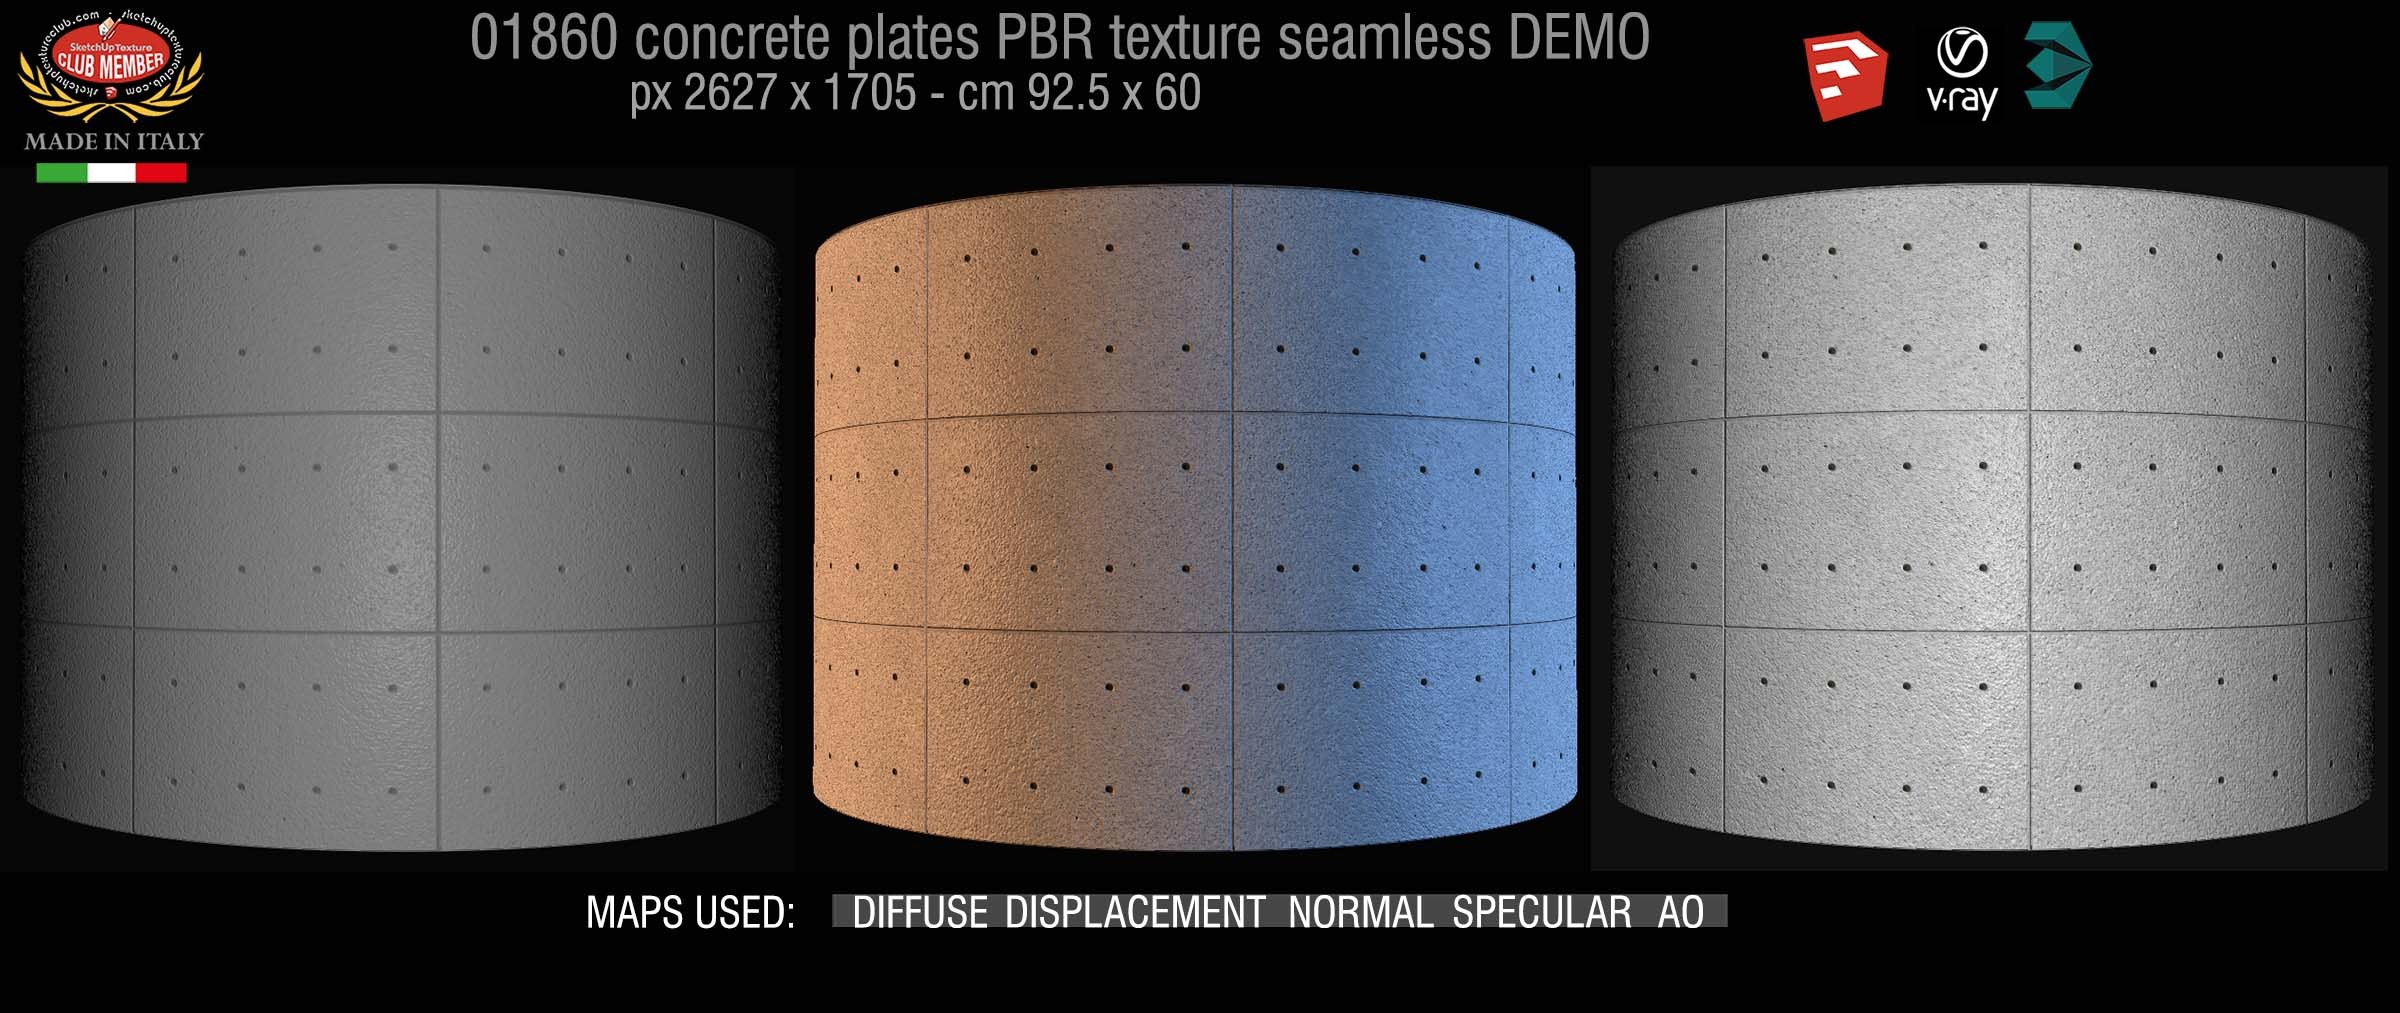 01860 Tadao Ando concrete plates PBR texture seamless DEMO